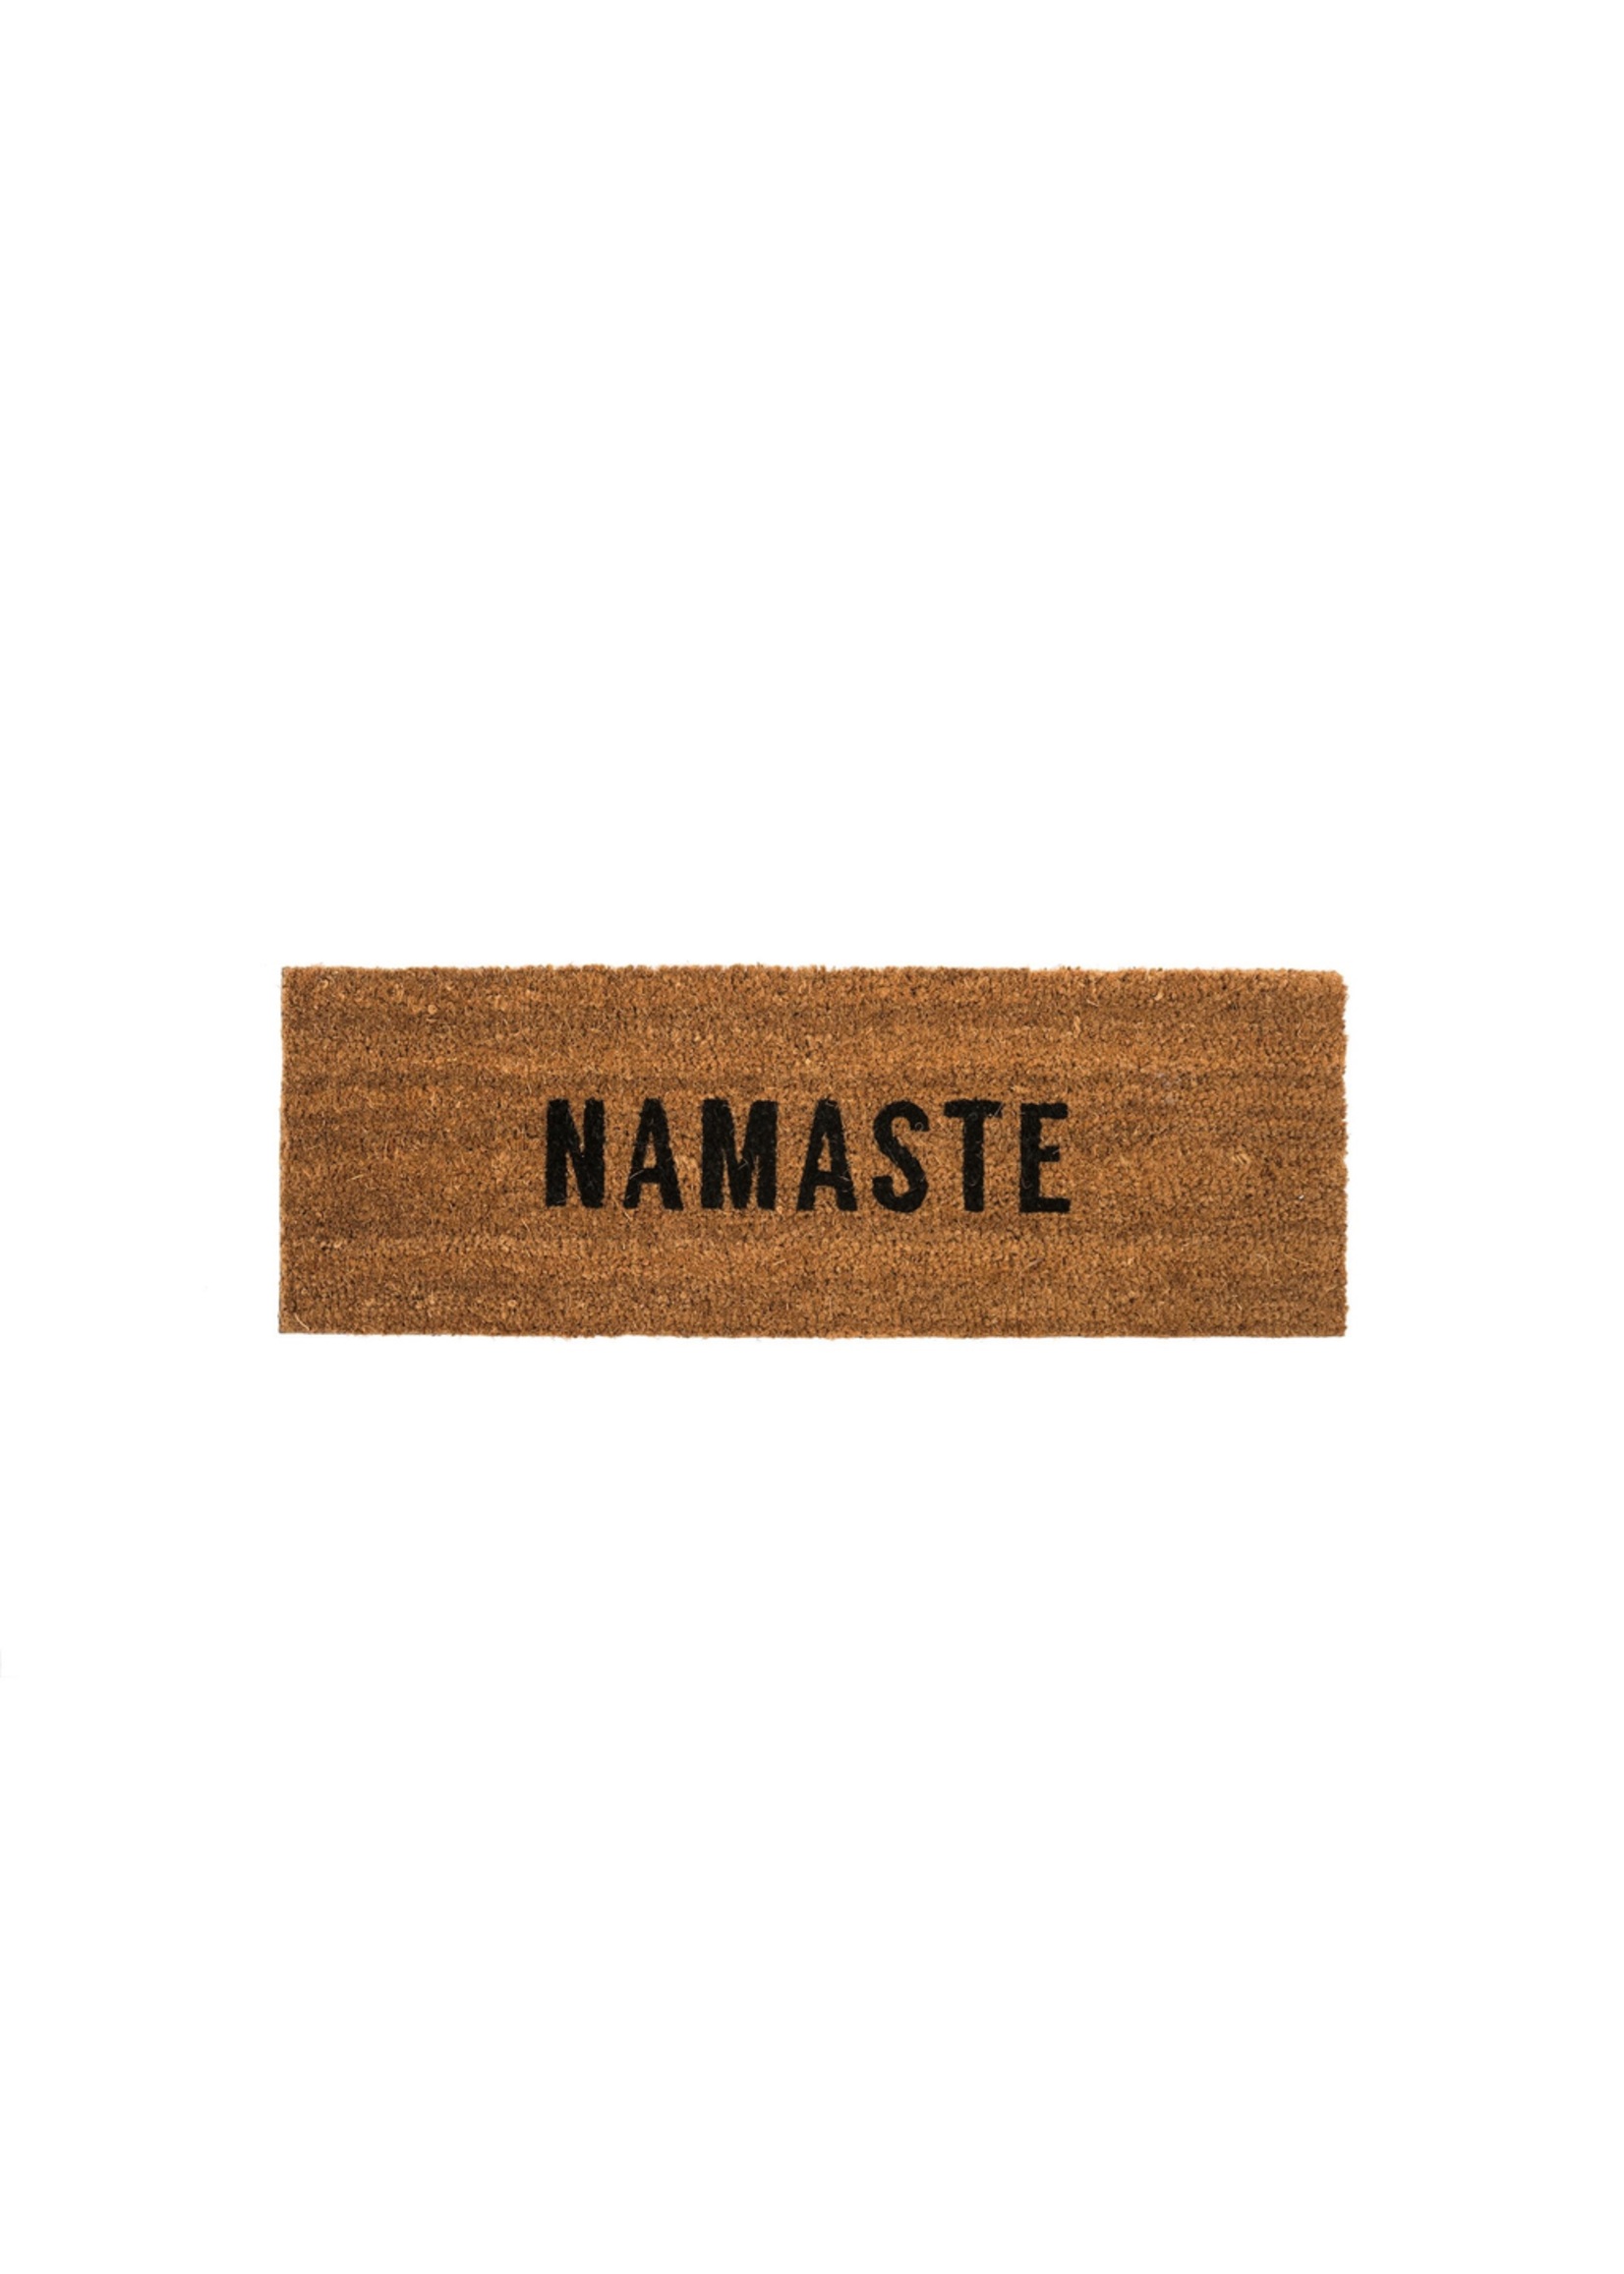 Namaste Coir Doormat